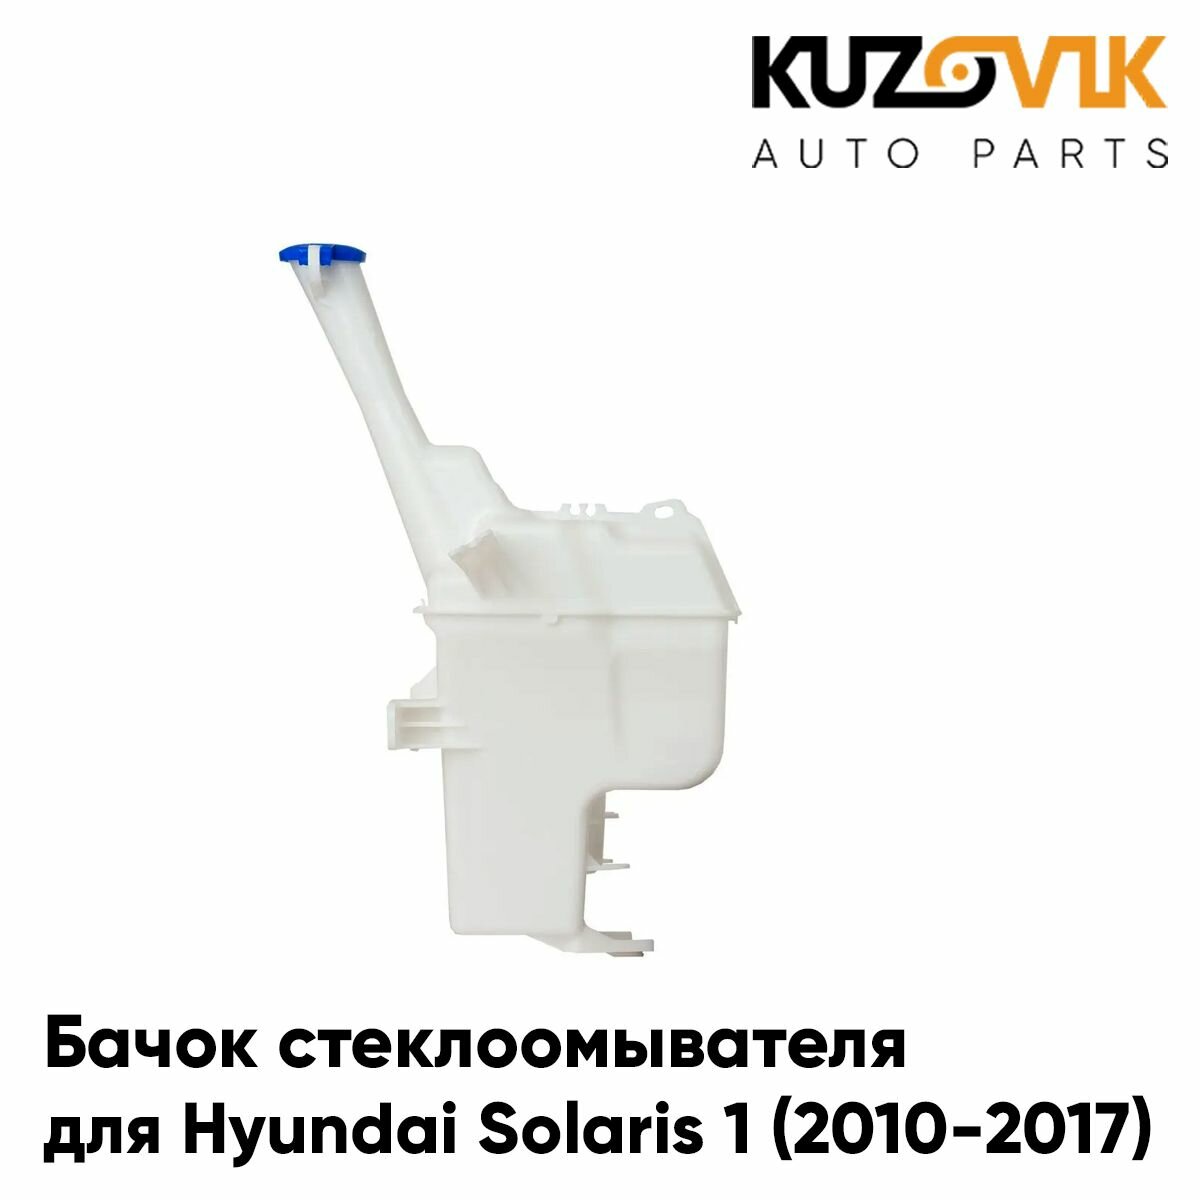 Бачок стеклоомывателя Hyundai Solaris 1 (2010-2017) под датчик уровня жидкости